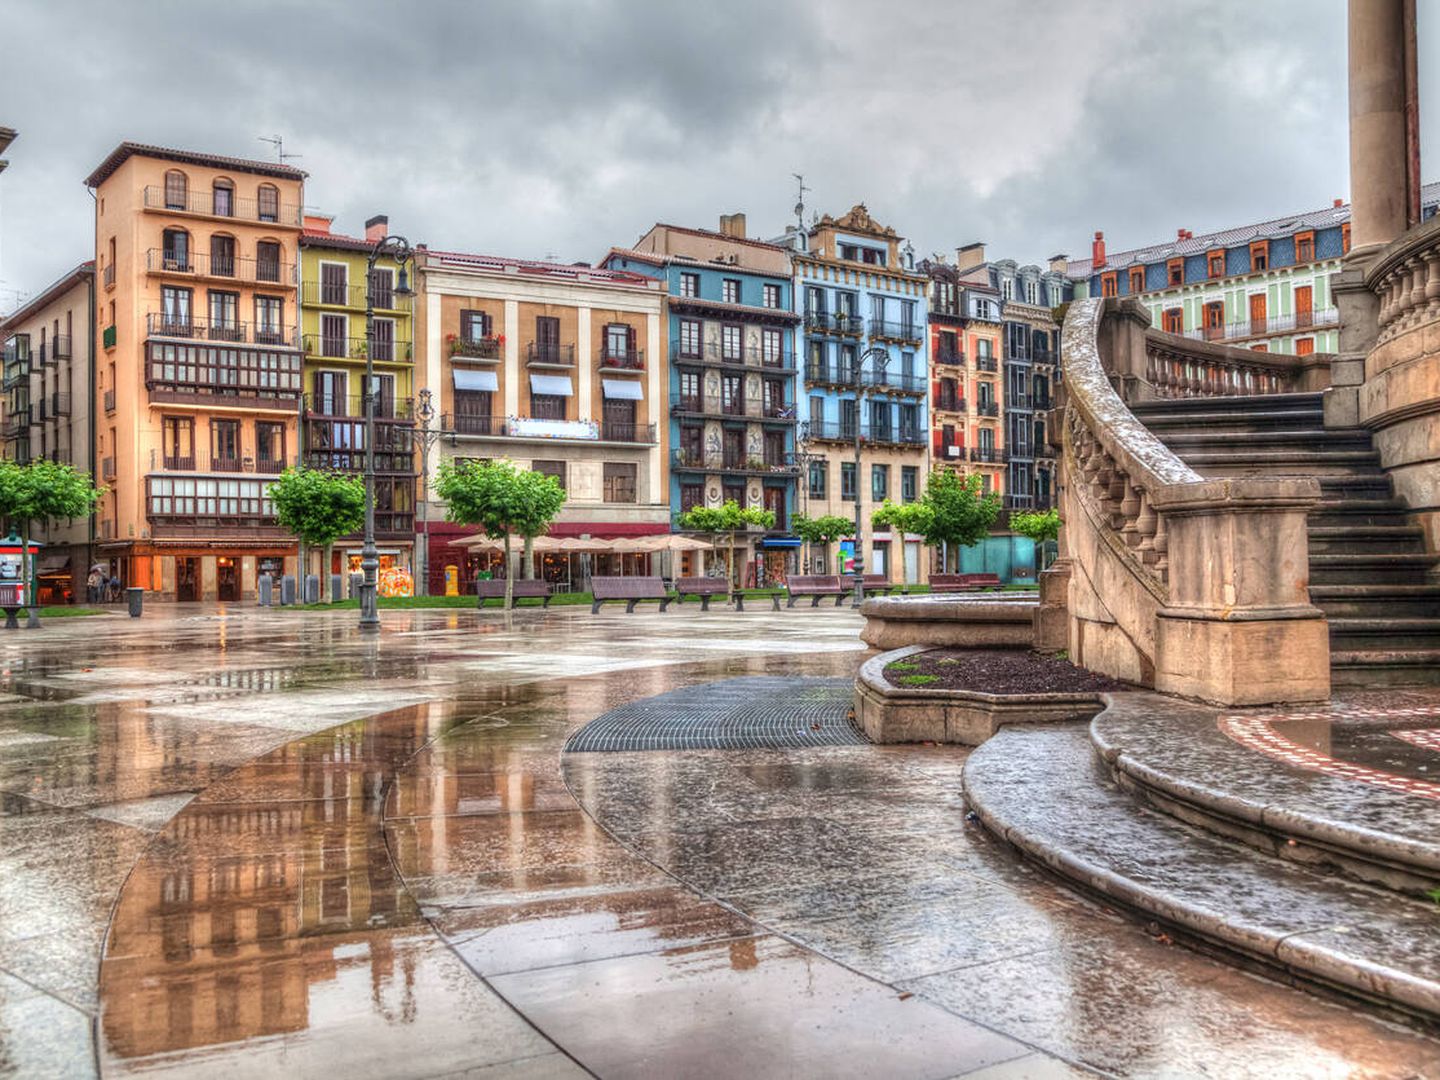 Plaza del Castillo, Pamplona. (iStock)